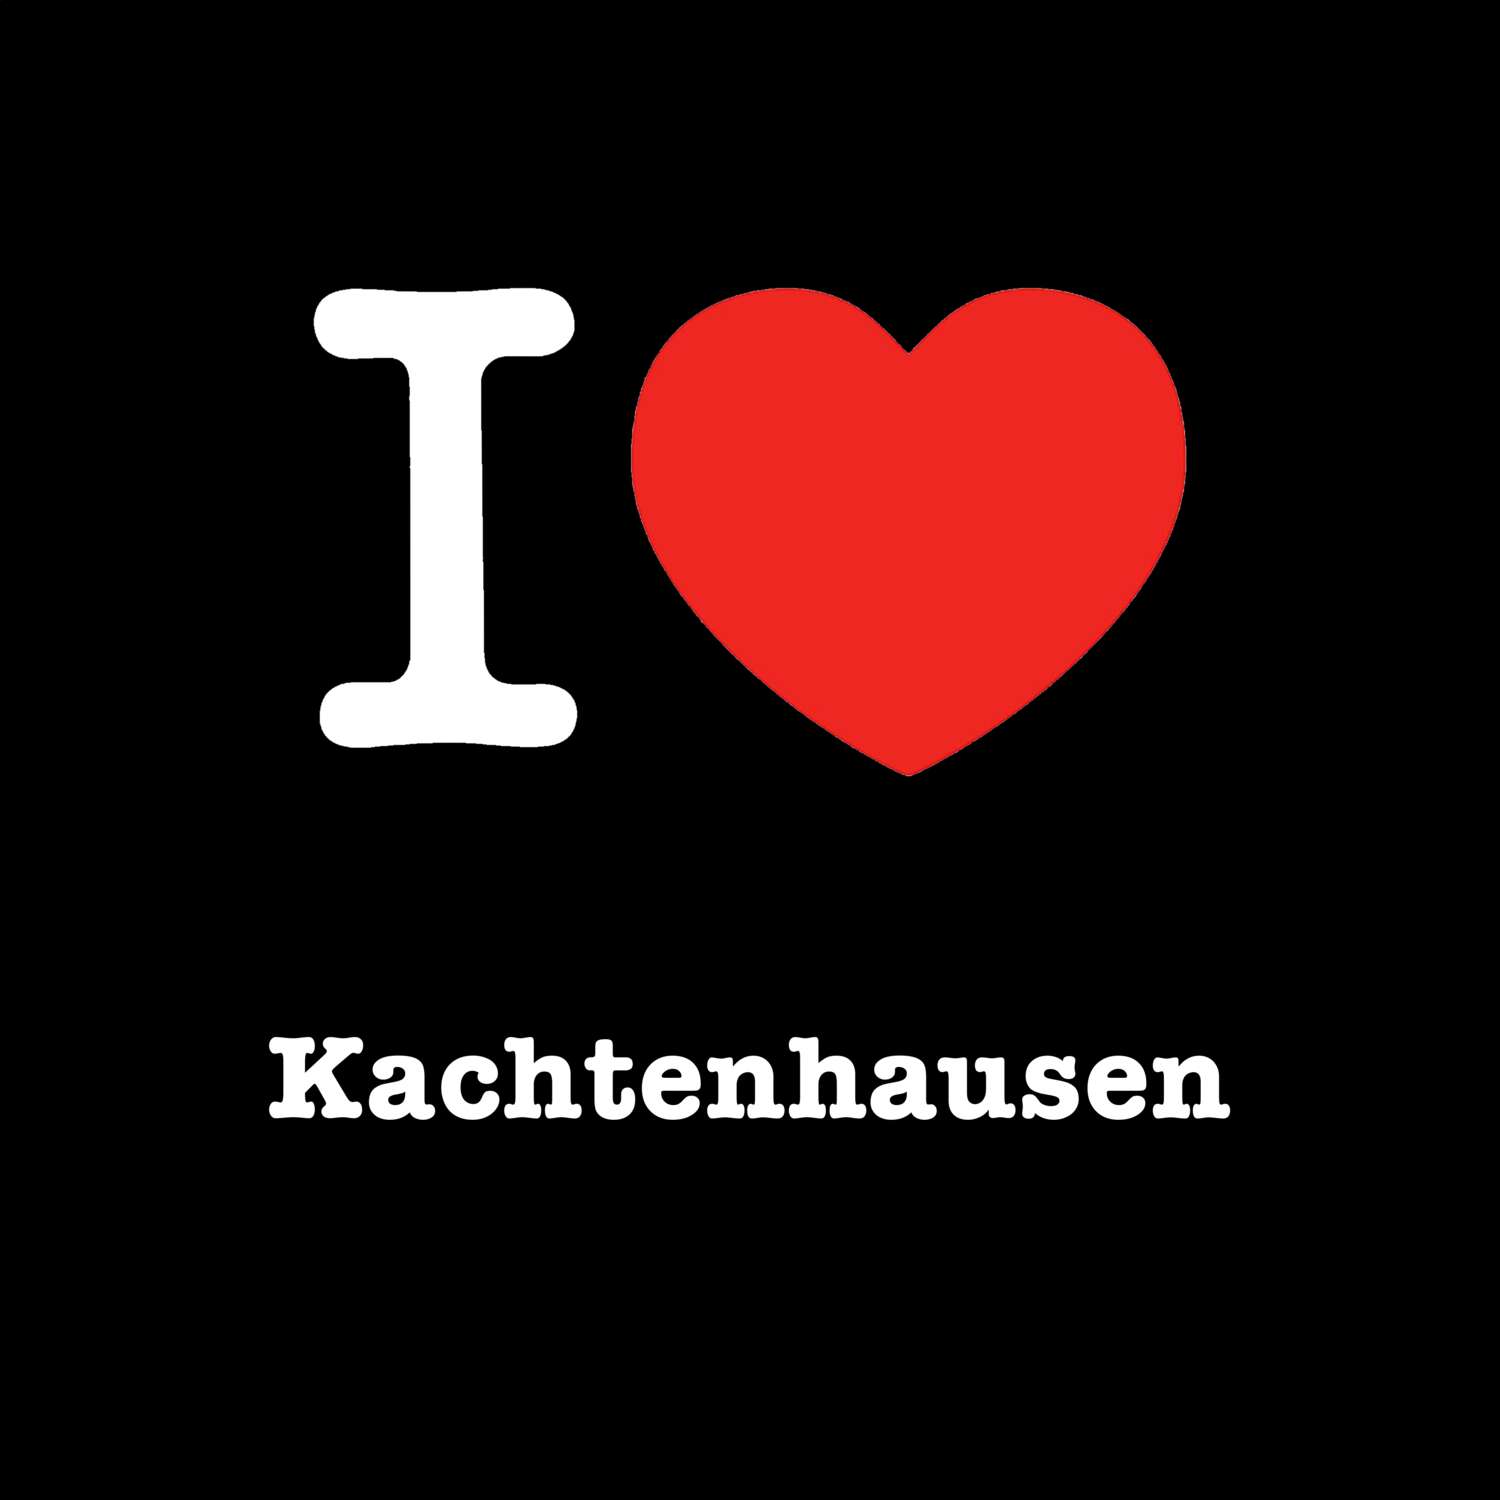 Kachtenhausen T-Shirt »I love«